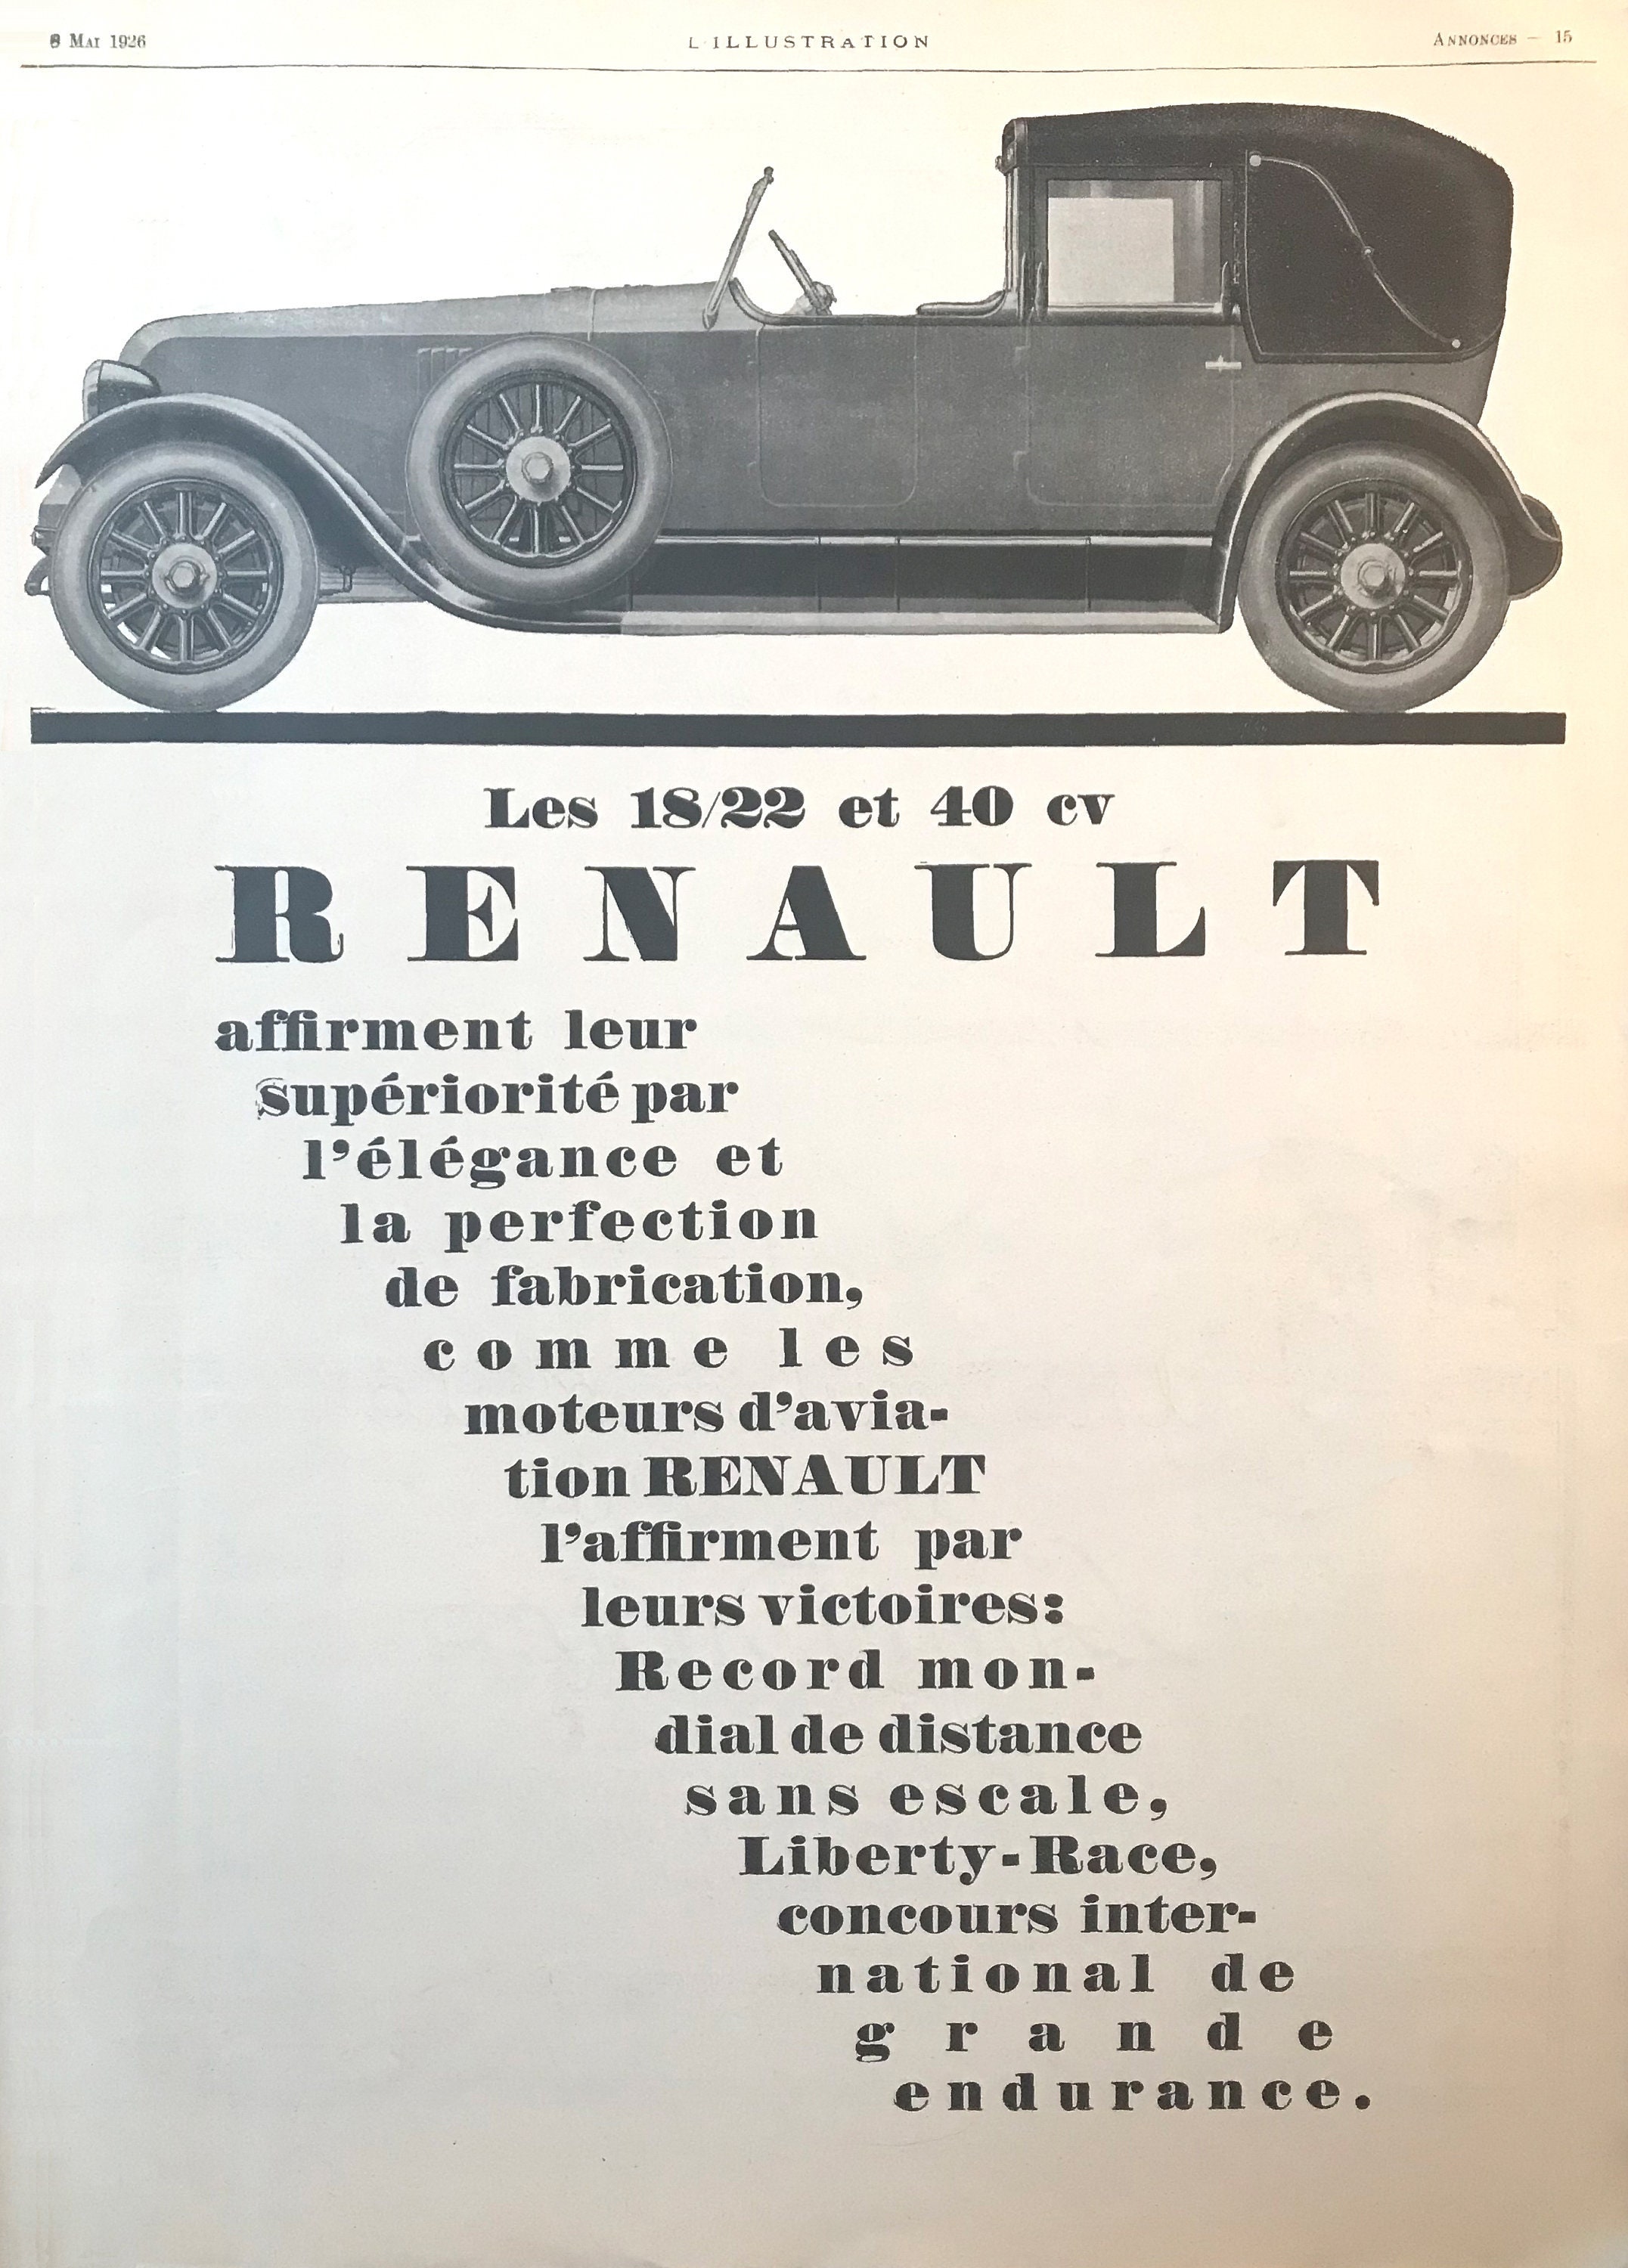 Voiture RENAULT vintage publicité 8 mai 1928 magazine L